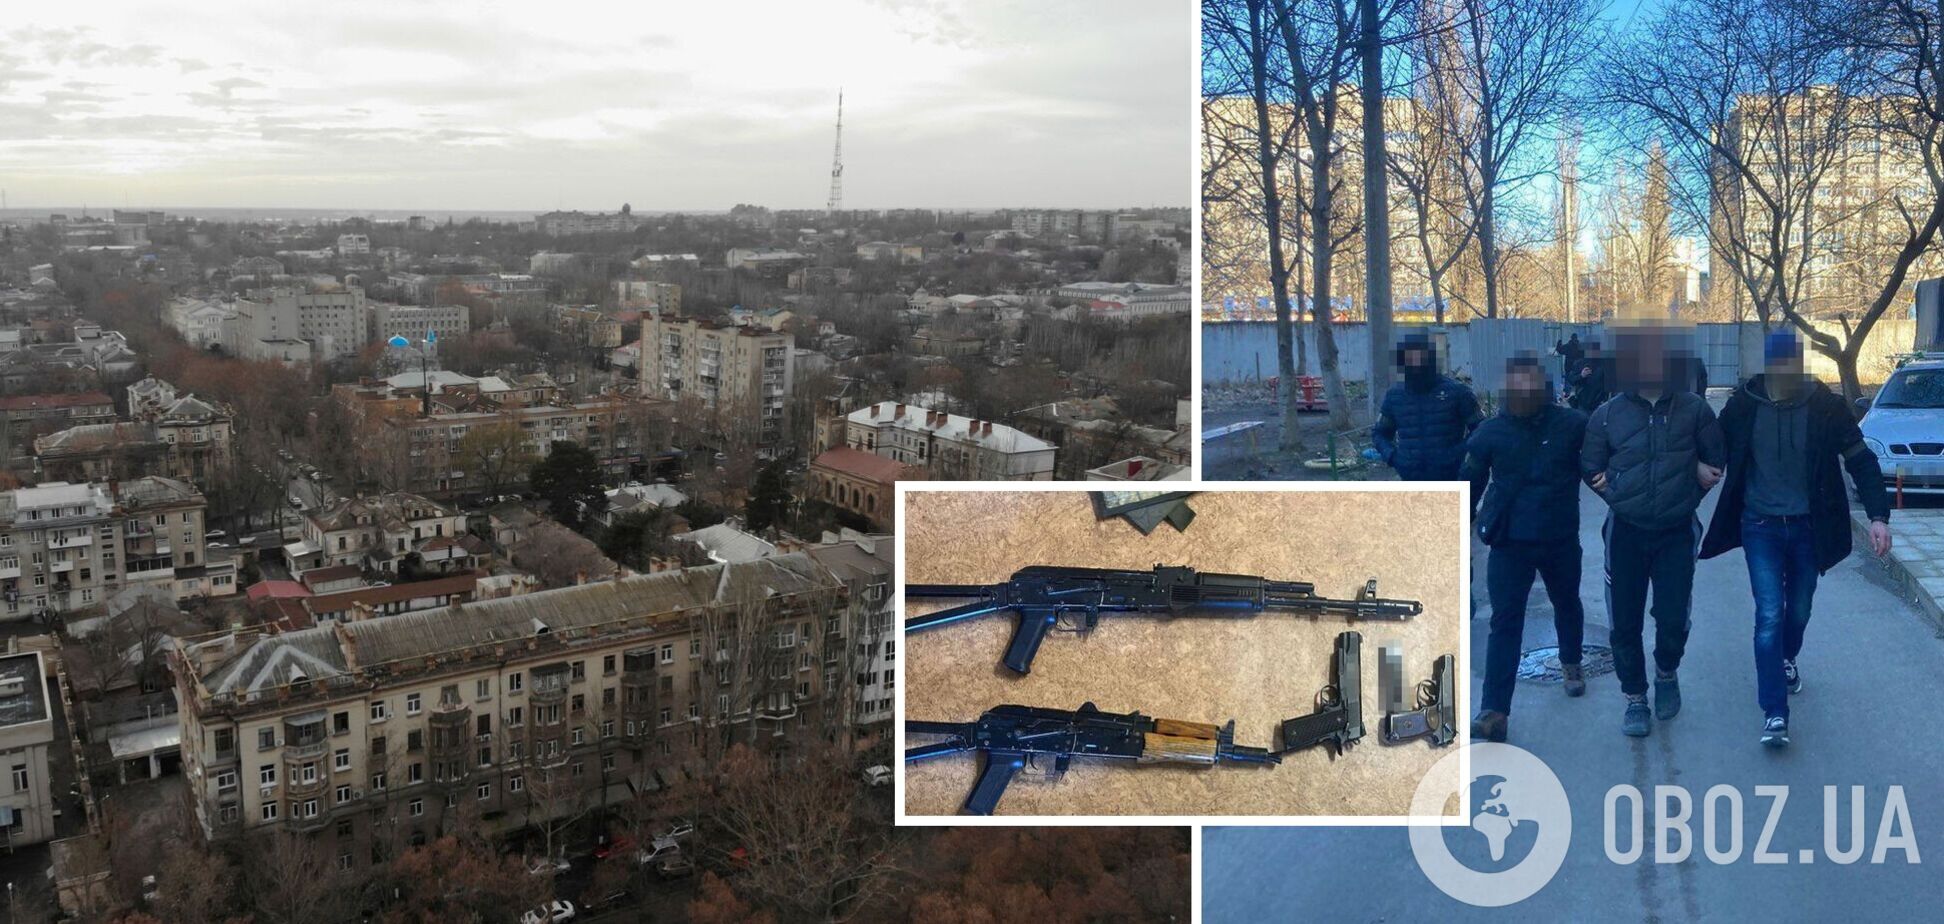 В Николаеве задержали агента ФСБ, разведывавшего места базирования иностранного вооружения. Фото